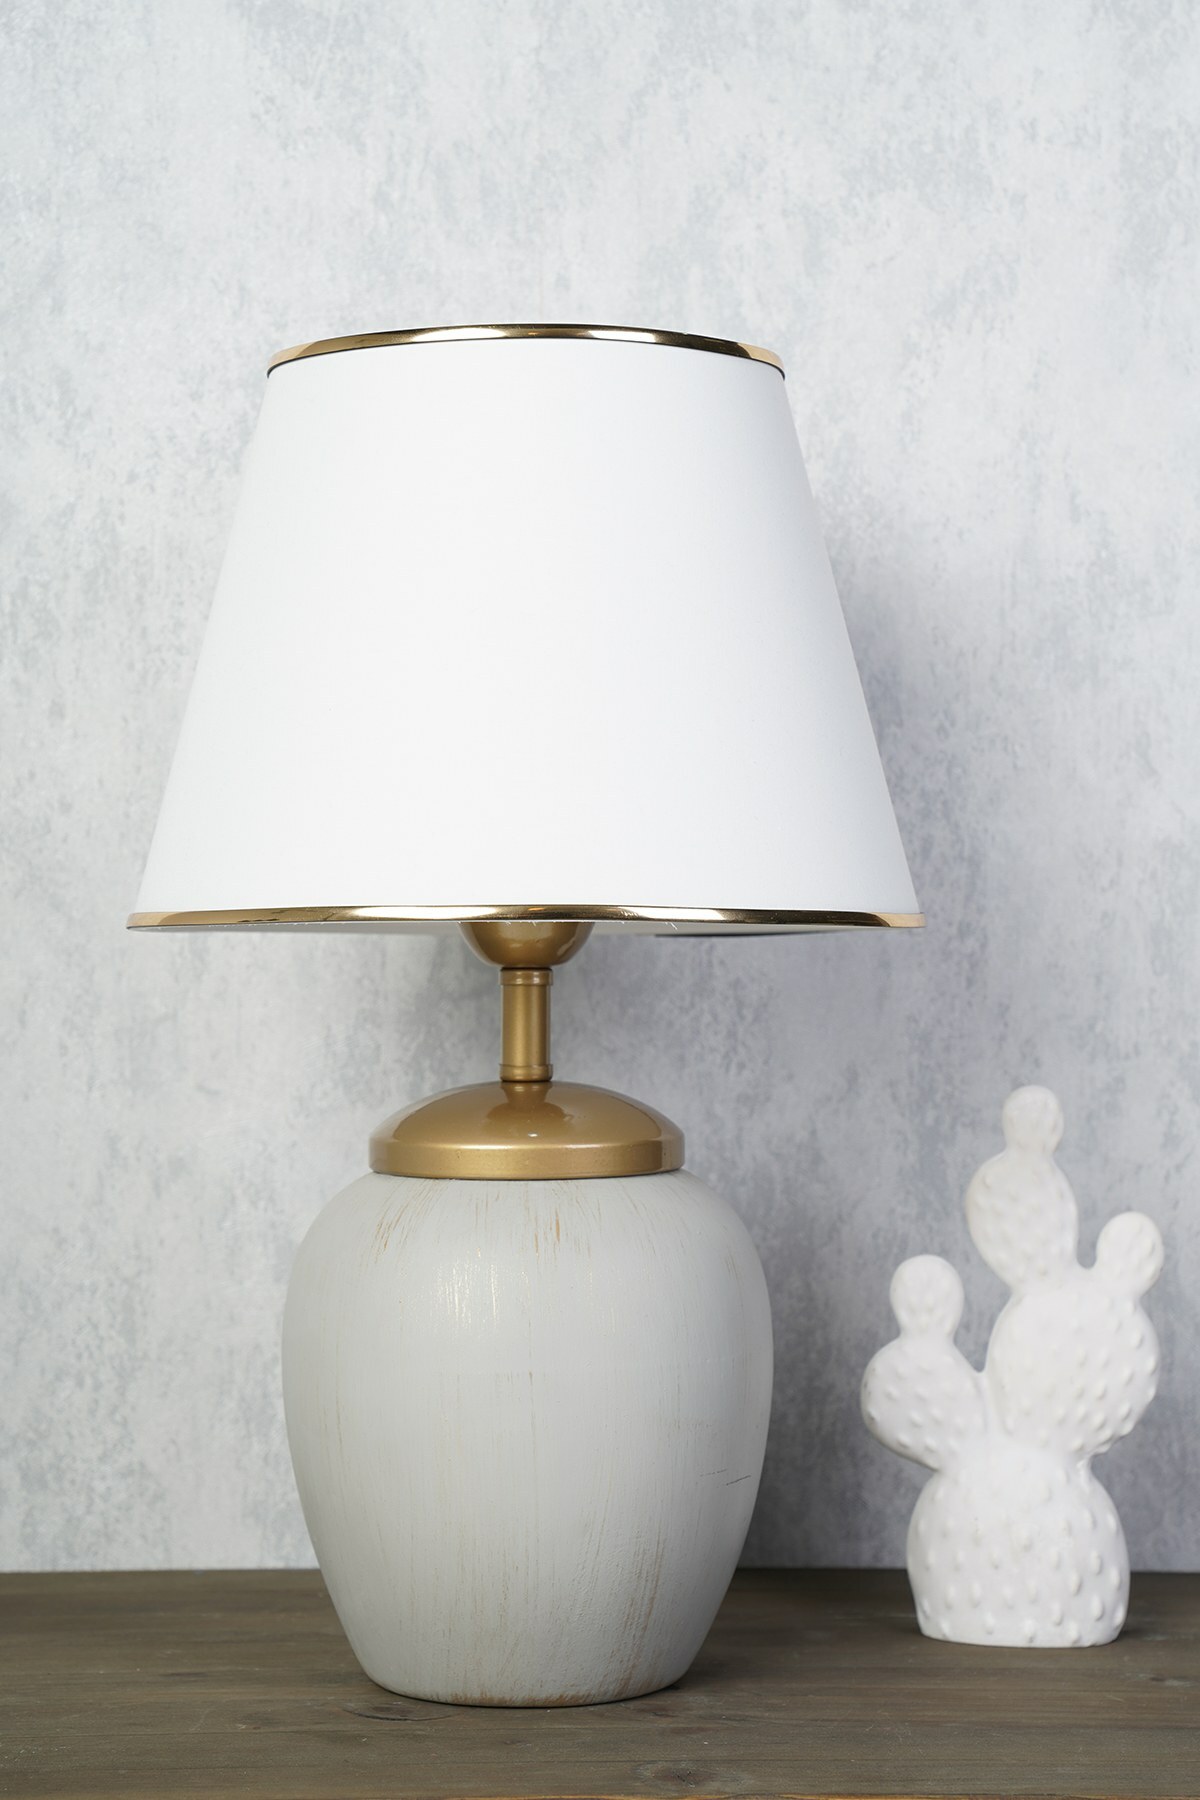 Lampa stołowa Insolive biało/szara ze złotymi detalami